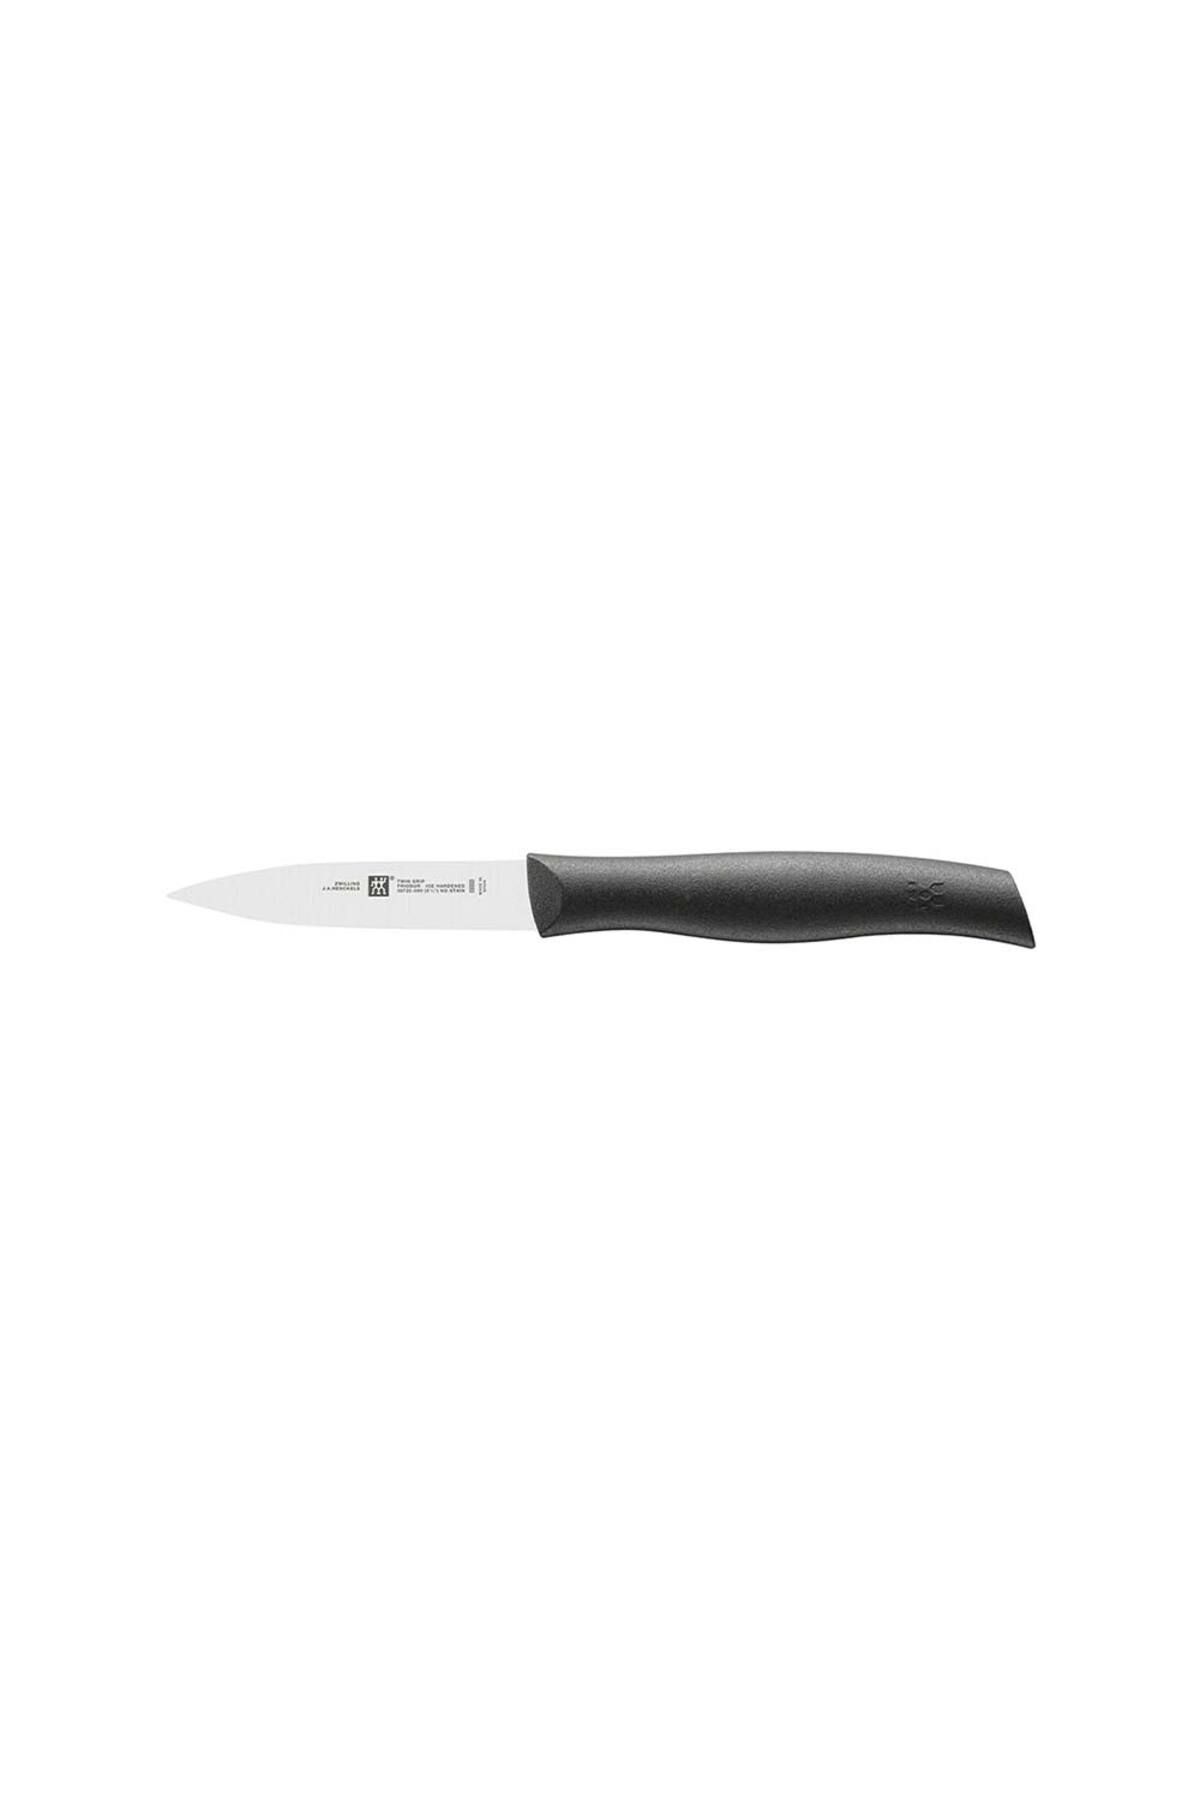 Zwilling 387200900 Soyma Bıçağı, Siyah